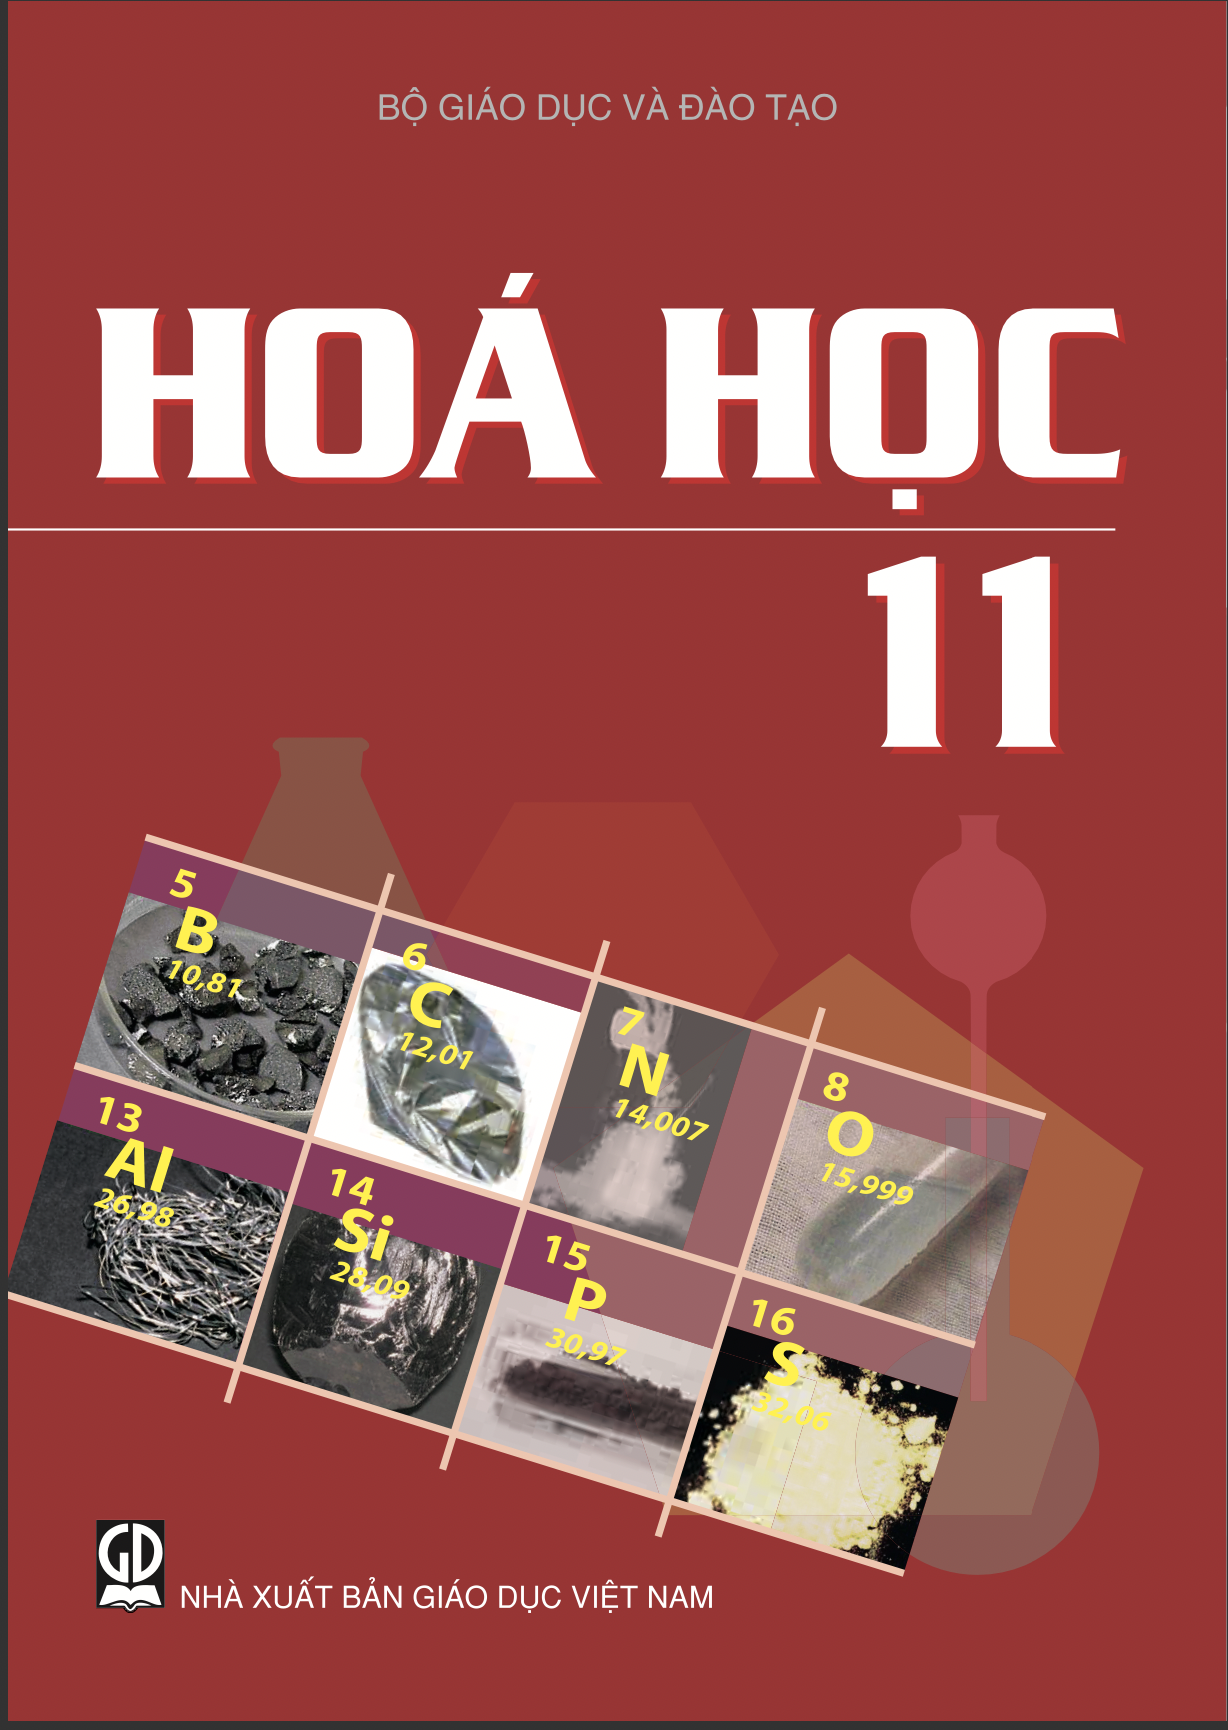 hoa-hoc-1157